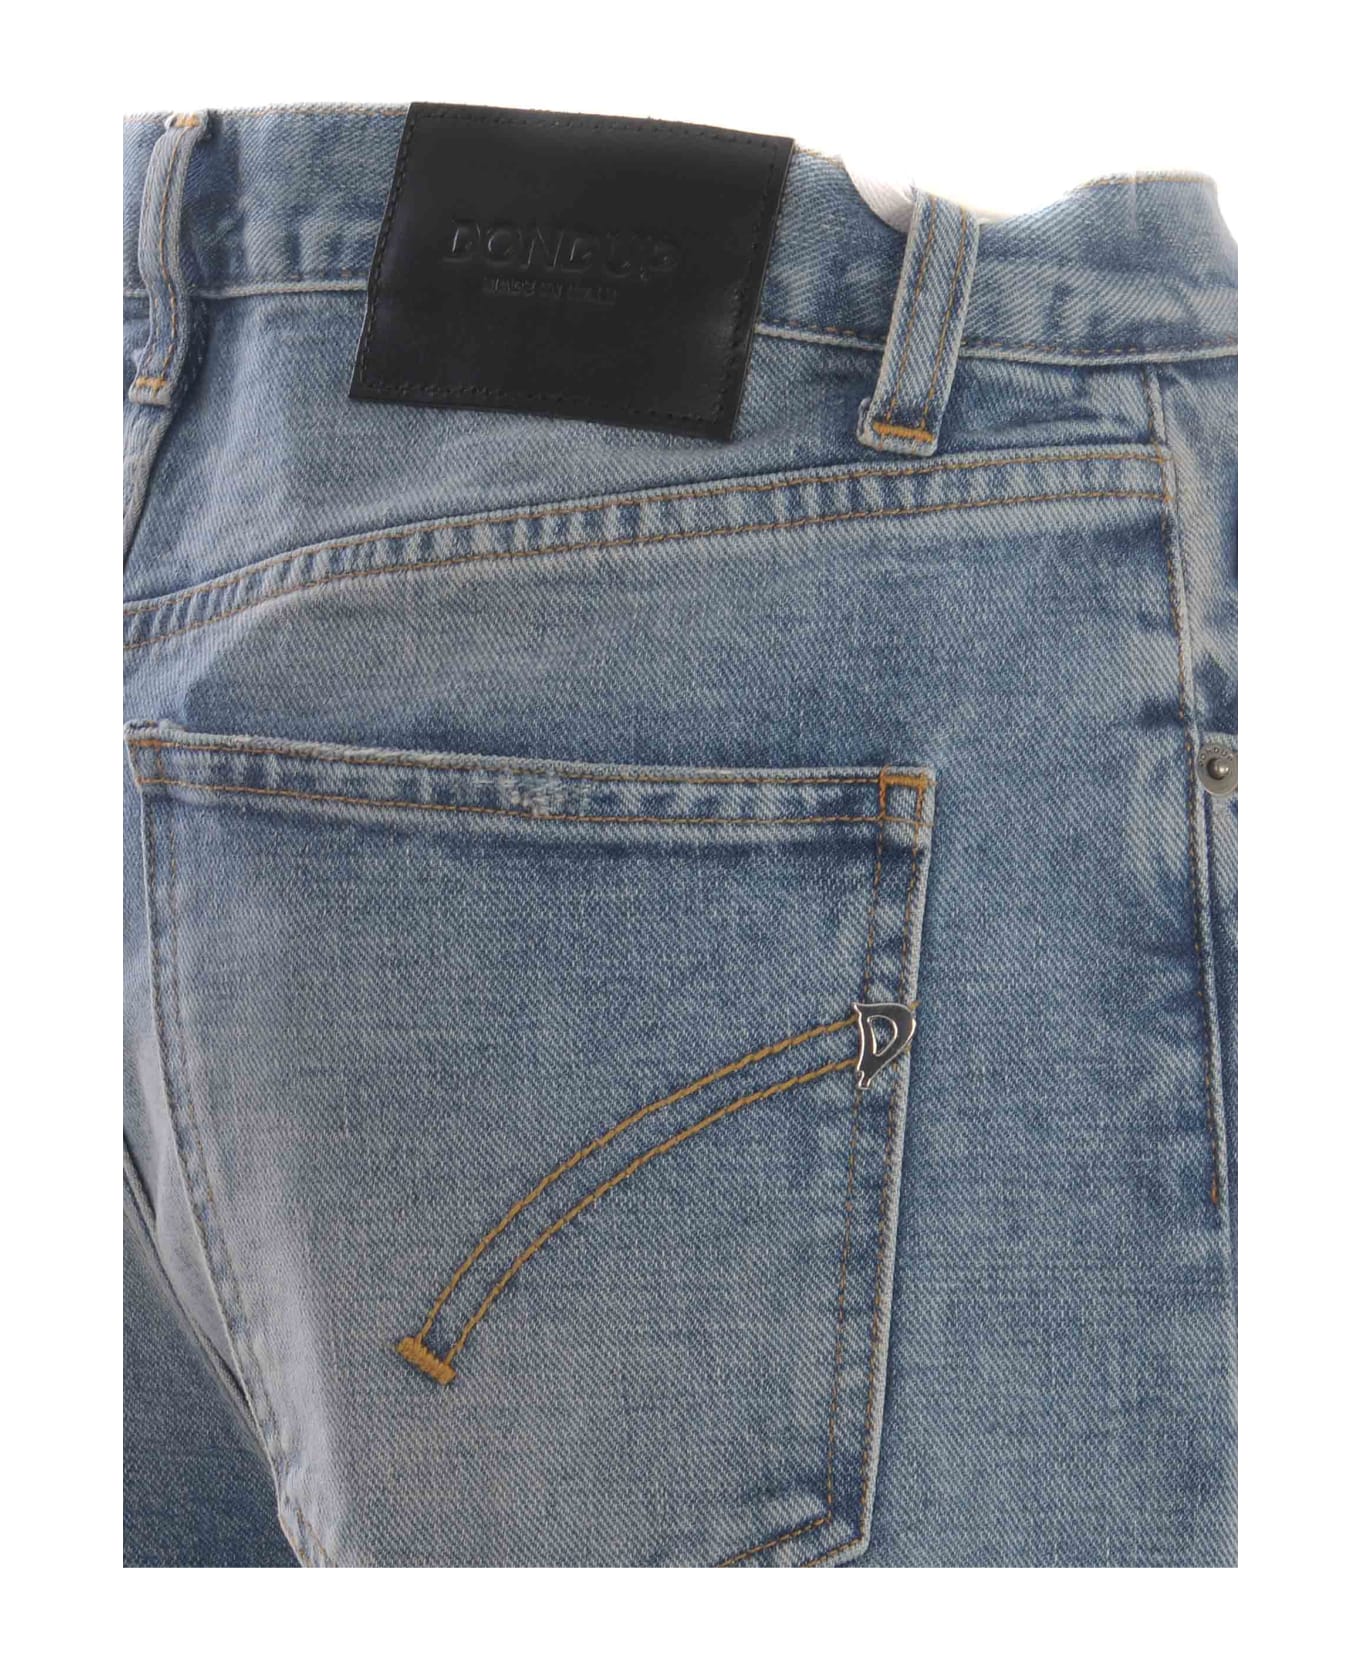 Dondup Jeans Dondup 'francine' Made Of Denim - Denim azzurro chiaro